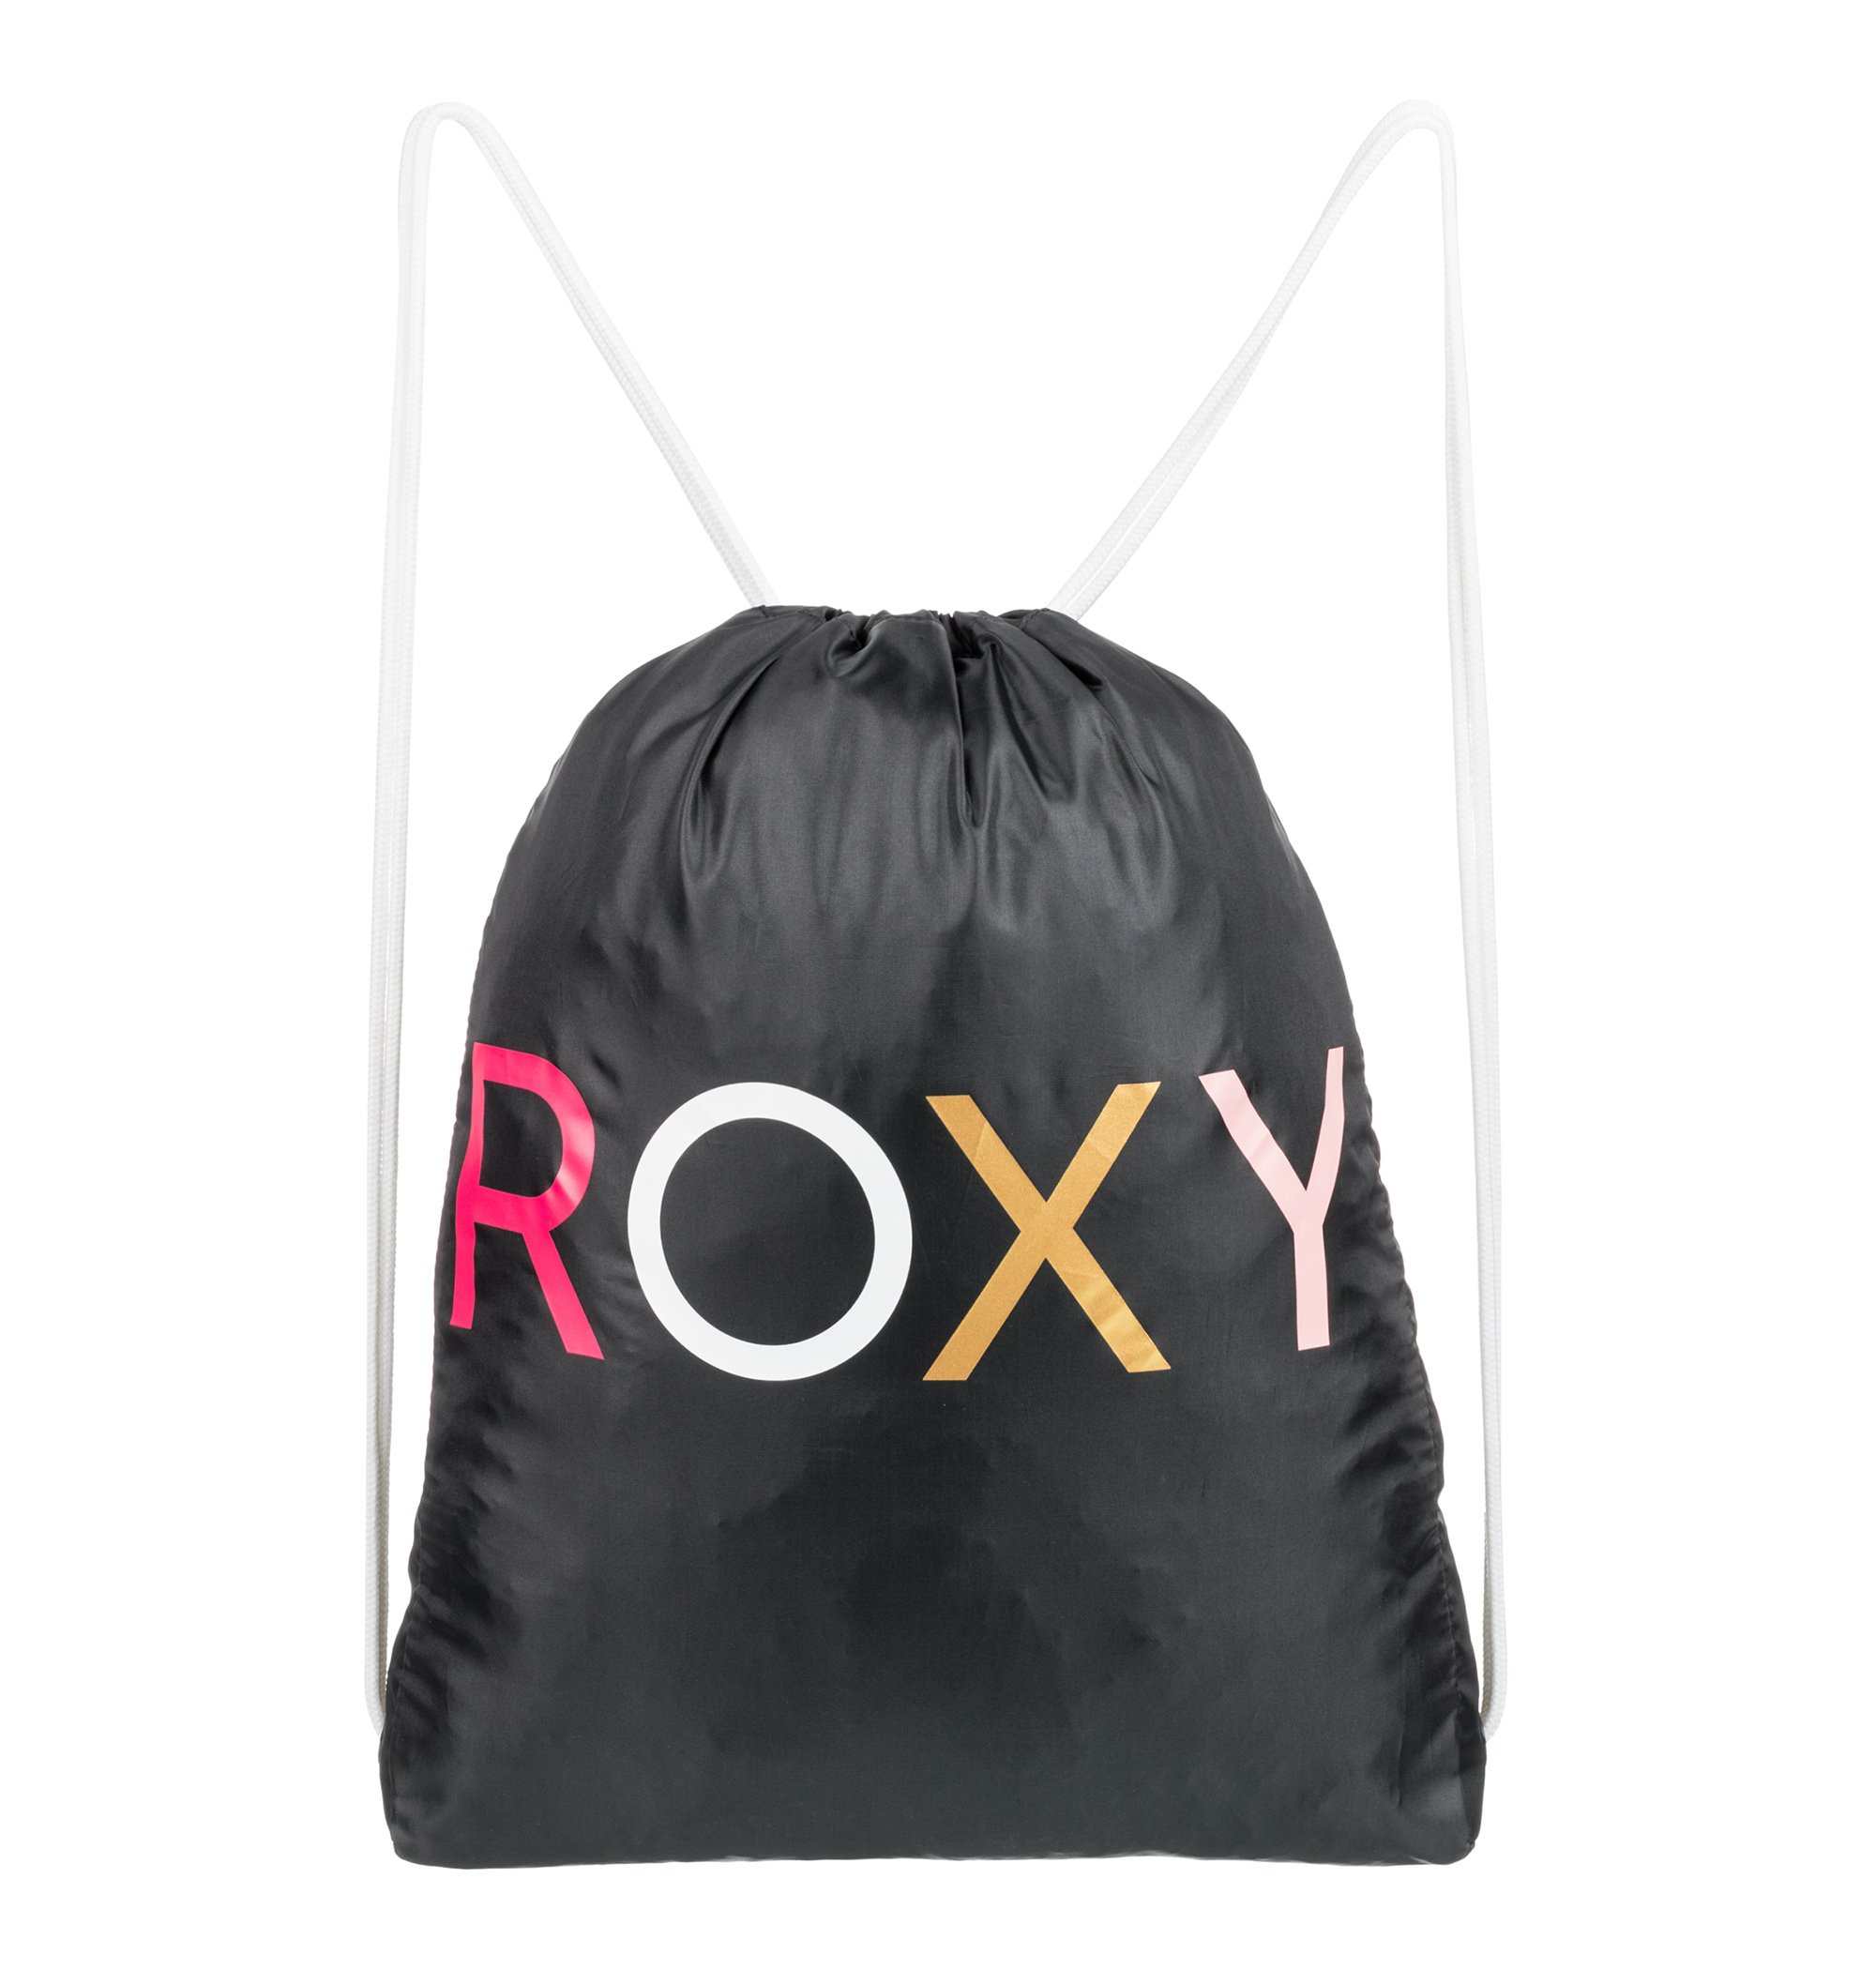 ＜Roxy＞LIGHT AS A FEATHER SOLID 大きめのカラフルなブランドロゴが目を引くナップサック